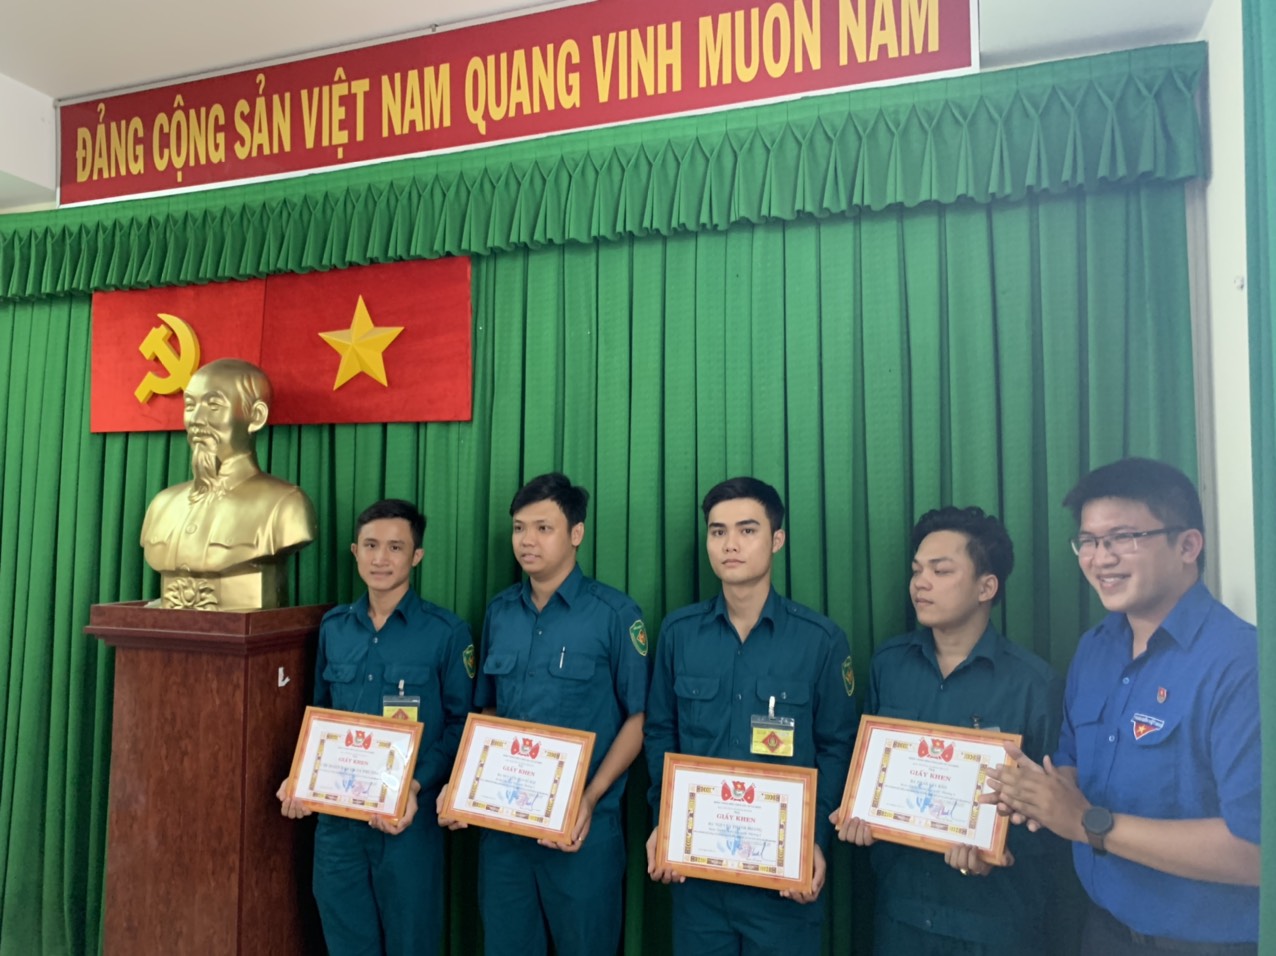 Đồng chí Nguyễn Minh Thiện - Phó bí thư Quận Đoàn trao giấy khen cho đại diện tập thể và các cá nhân tiêu biểu